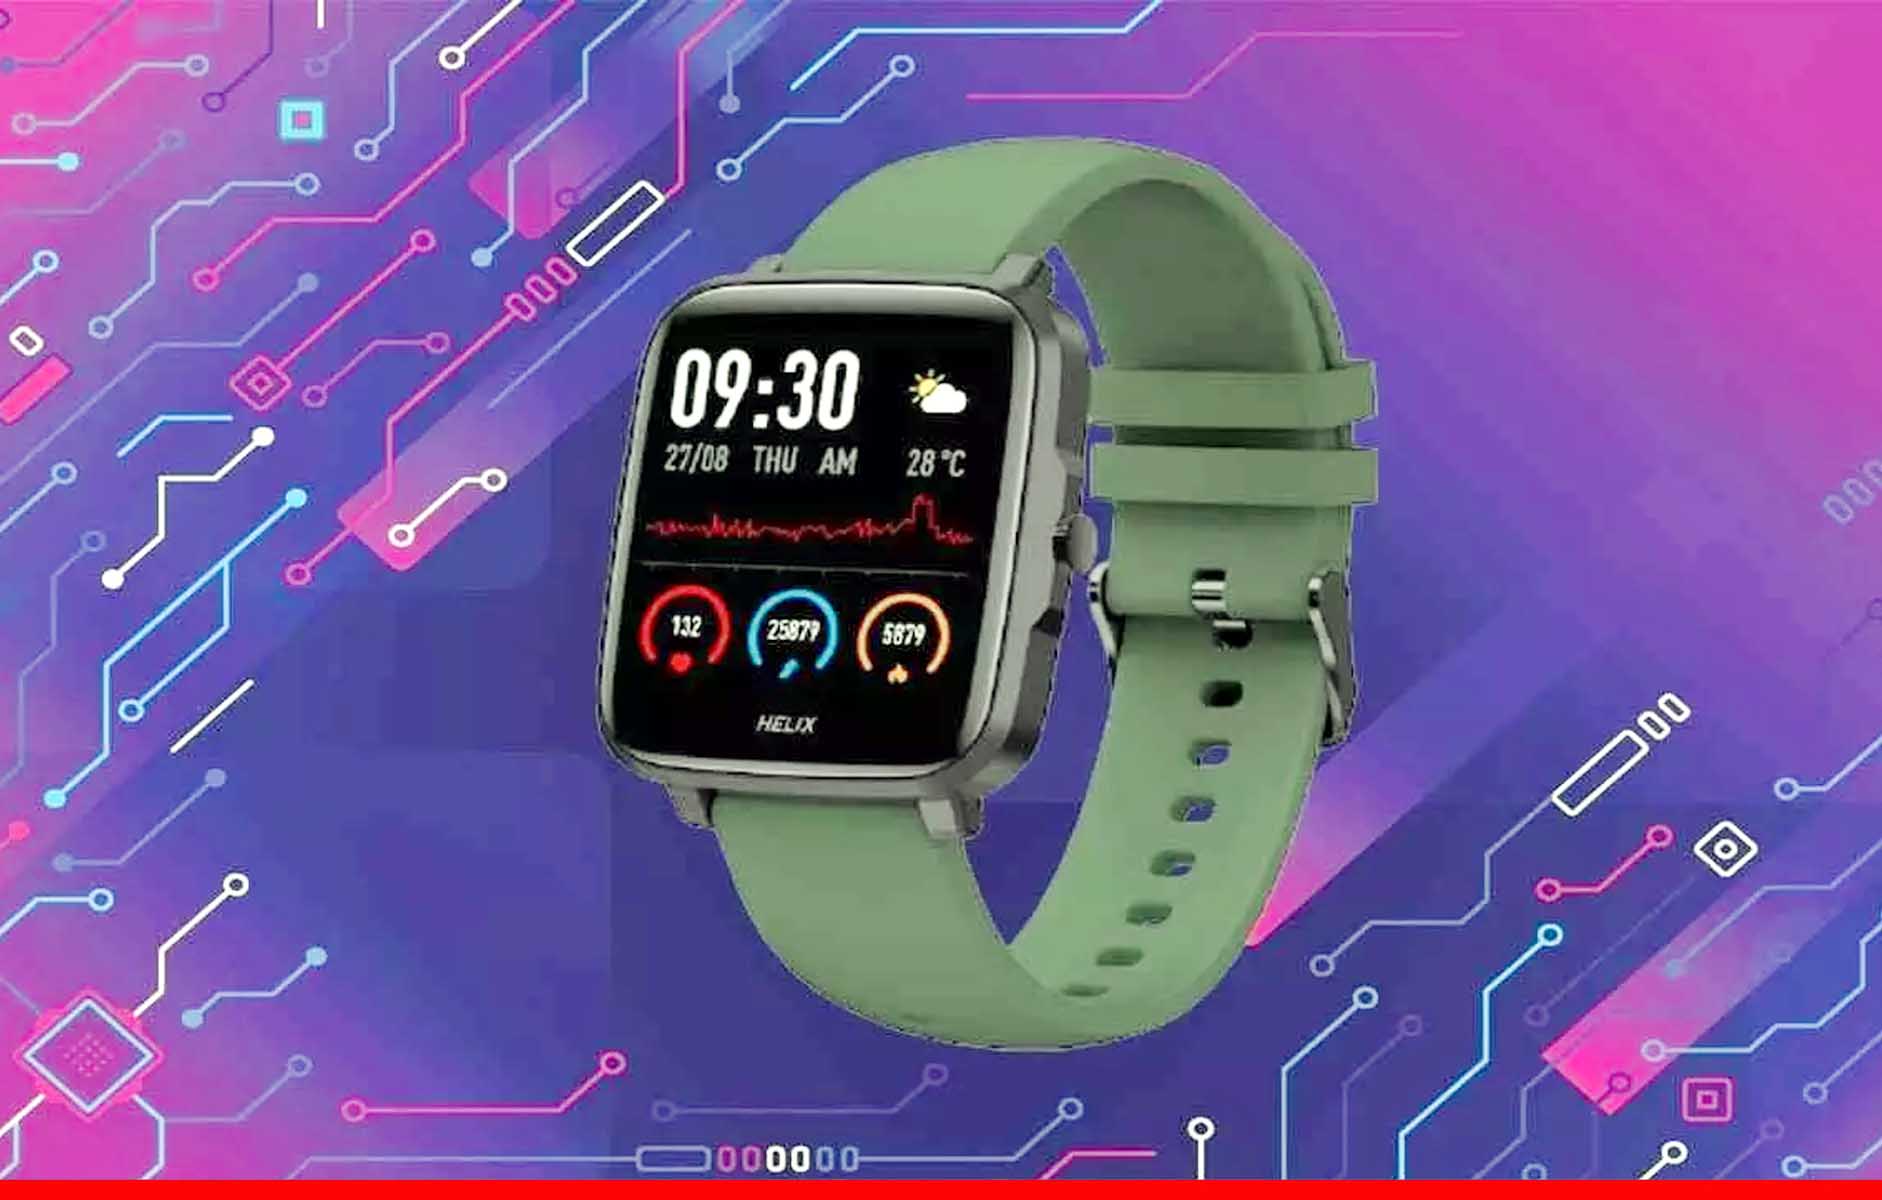 मार्केट में लॉन्च हुआ एपल की तरह दिखने वाला Timex का स्मार्टवॉच